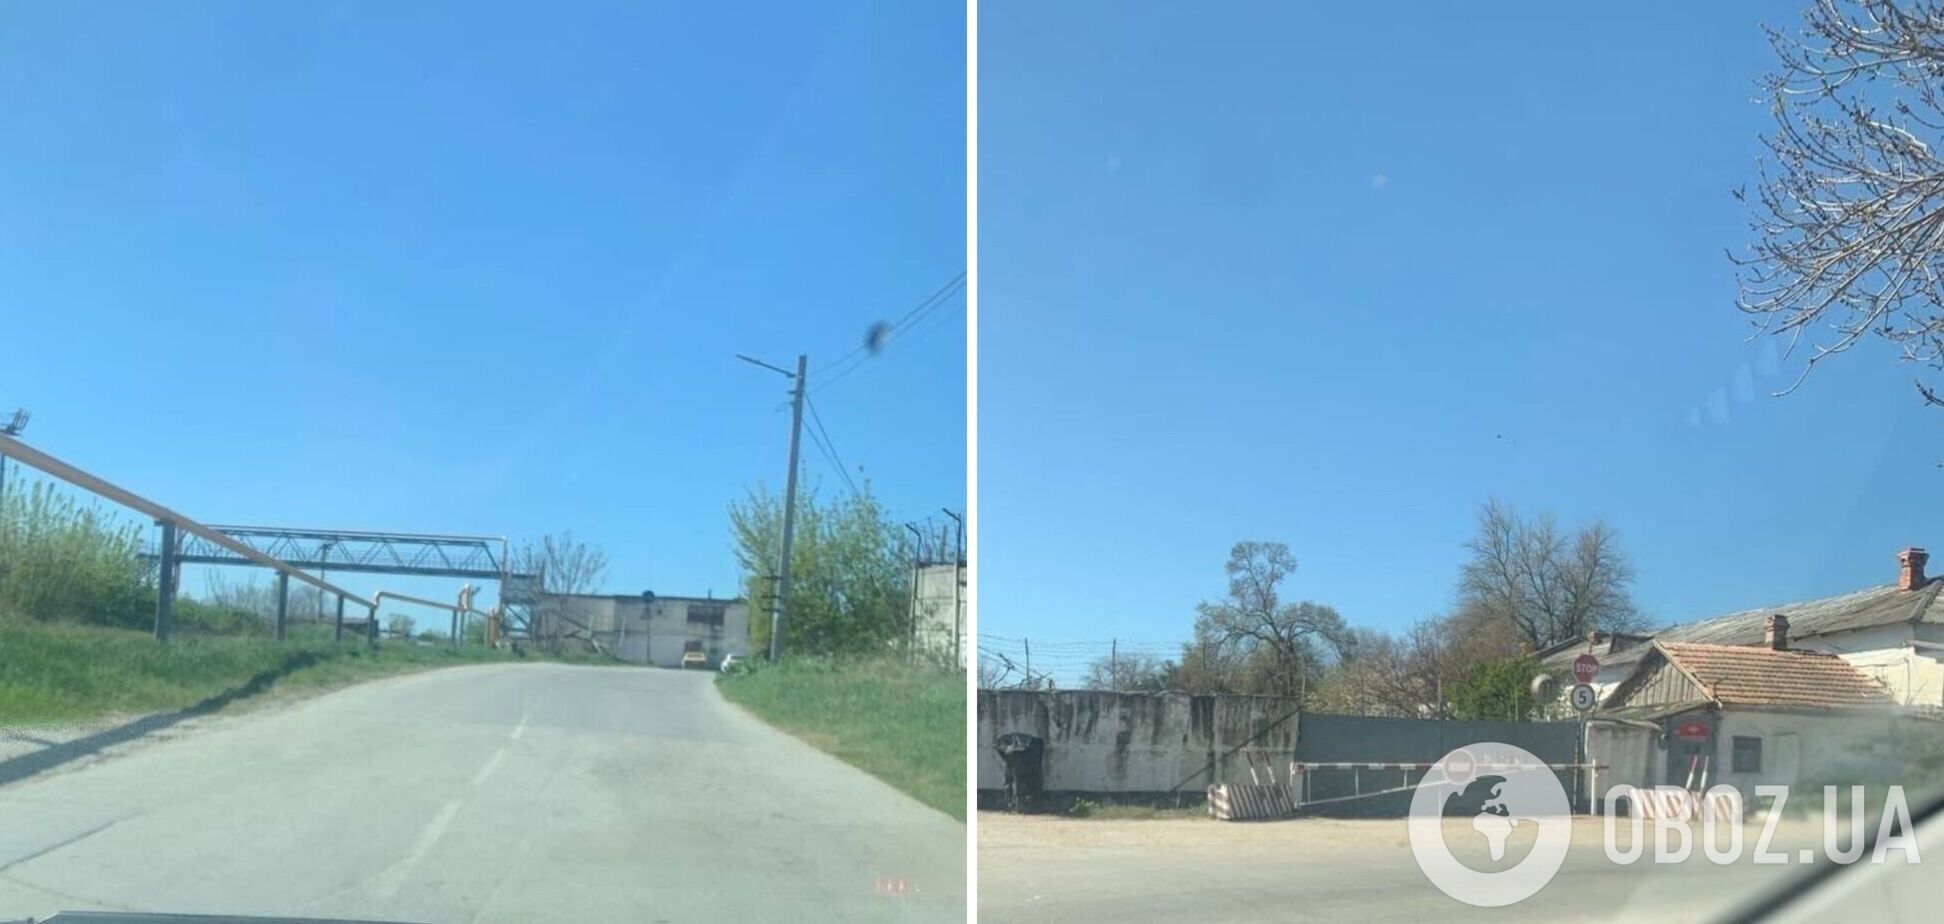 Агенты 'Атеш' обнаружили базу материально-технического обеспечения ЧФ в Севастополе: данные передали Силам обороны